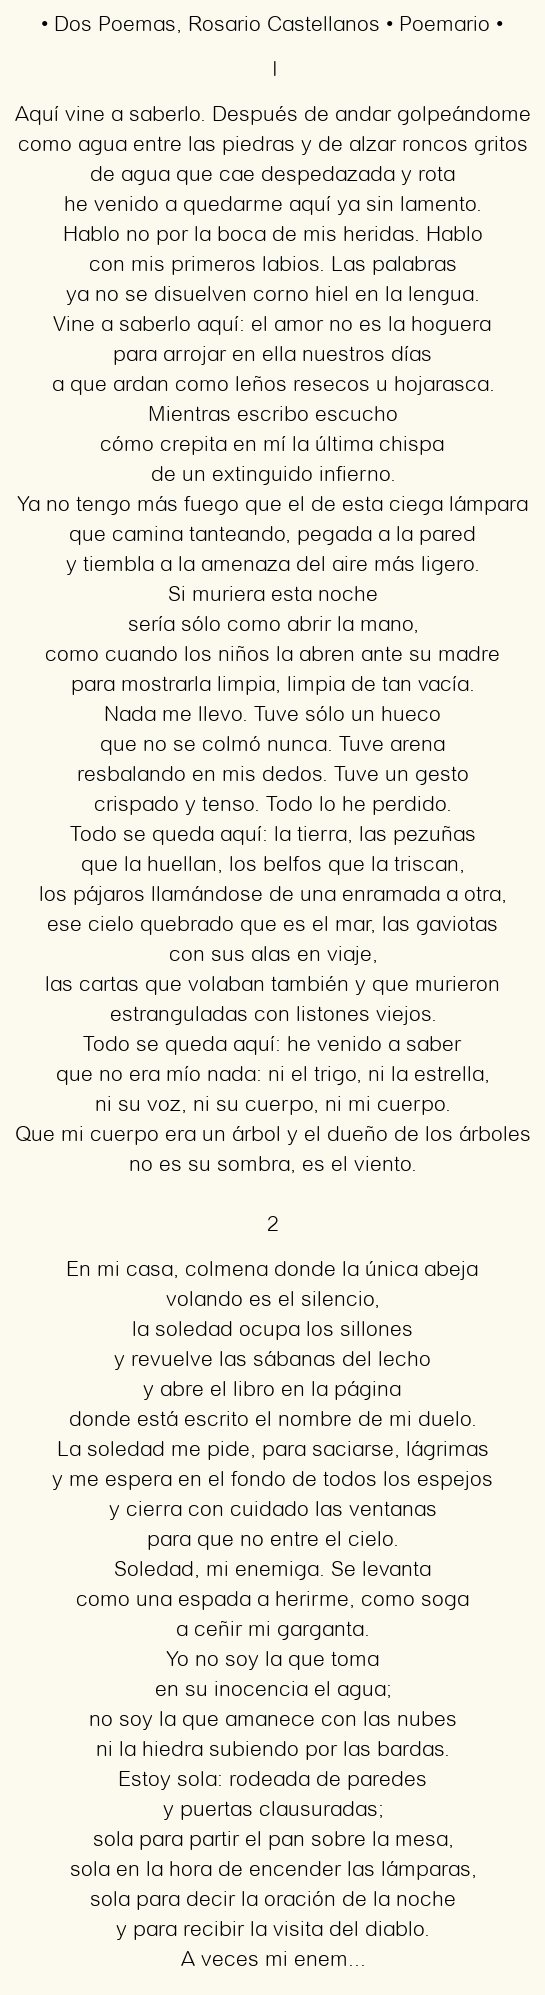 Dos Poemas, por Rosario Castellanos